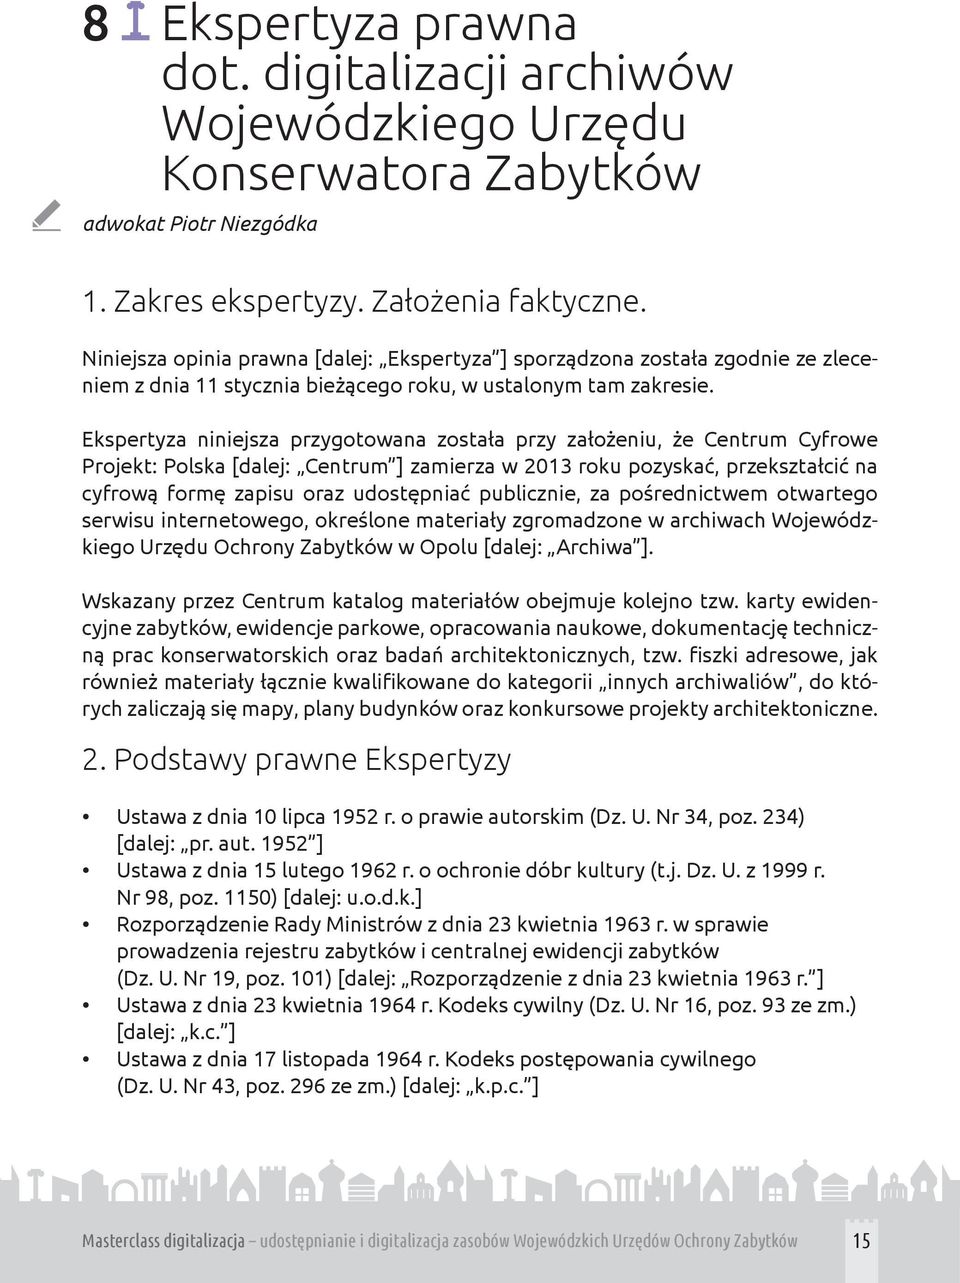 Ekspertyza niniejsza przygotowana została przy założeniu, że Centrum Cyfrowe Projekt: Polska [dalej: Centrum ] zamierza w 2013 roku pozyskać, przekształcić na cyfrową formę zapisu oraz udostępniać